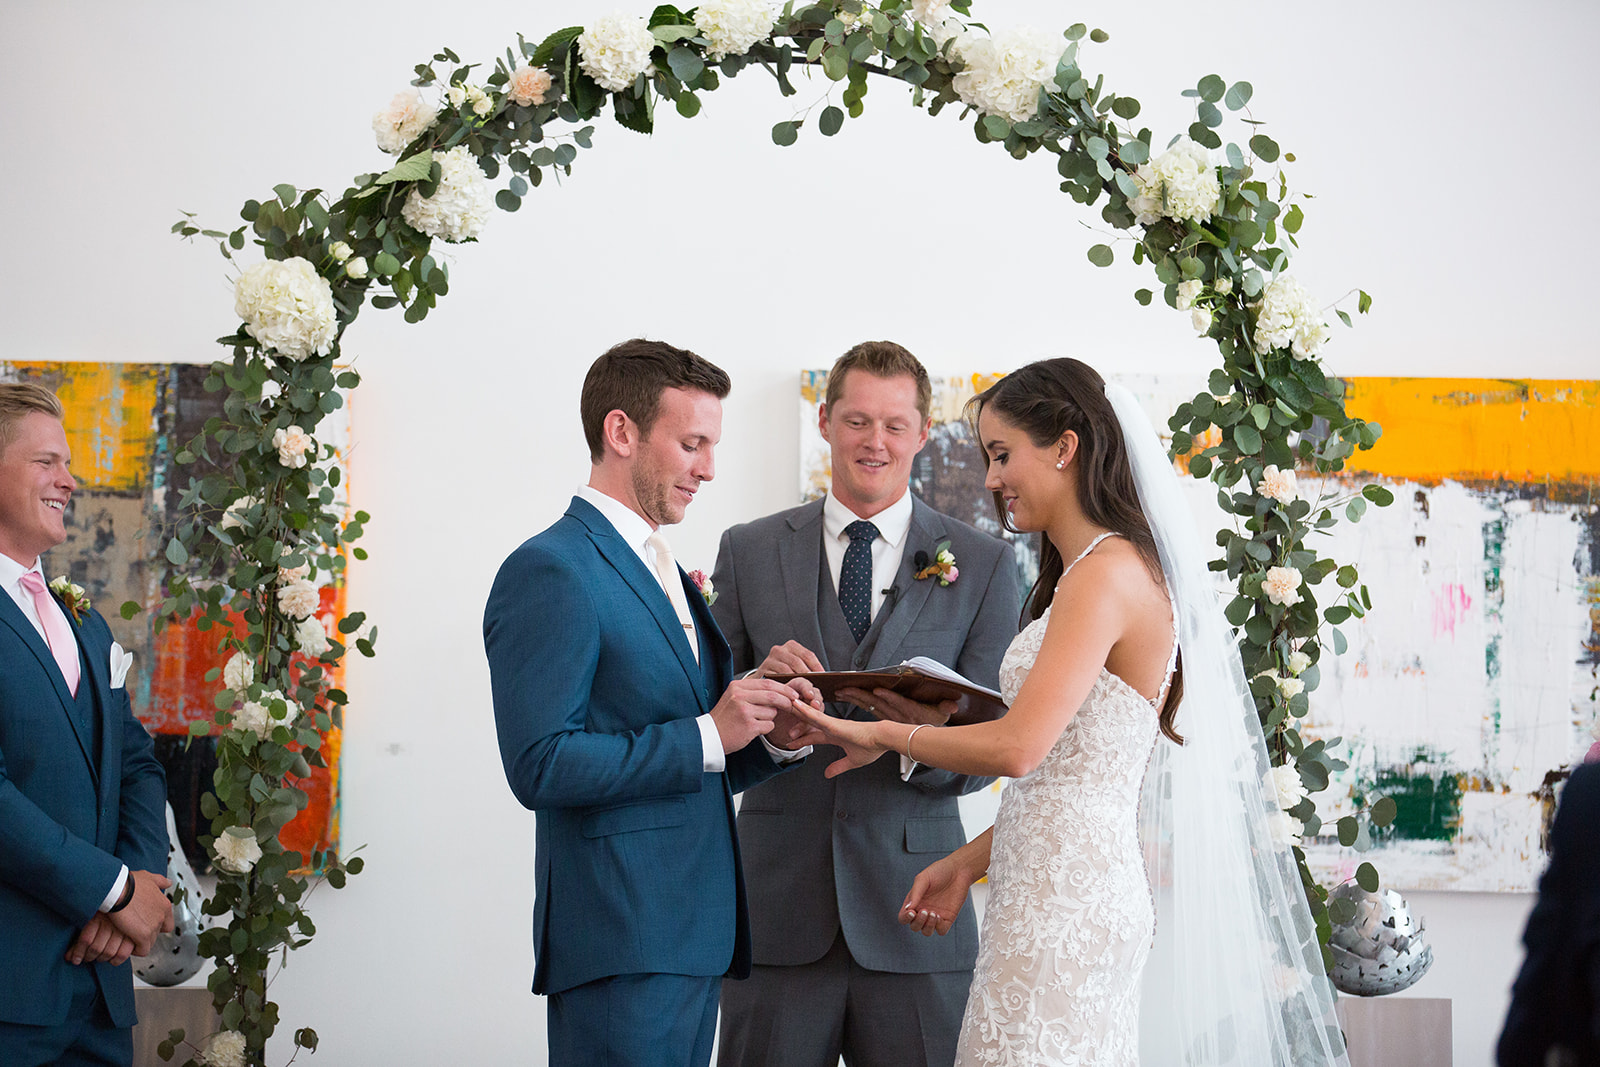 groom puts ring on bride's finger at Denver wedding ceremony